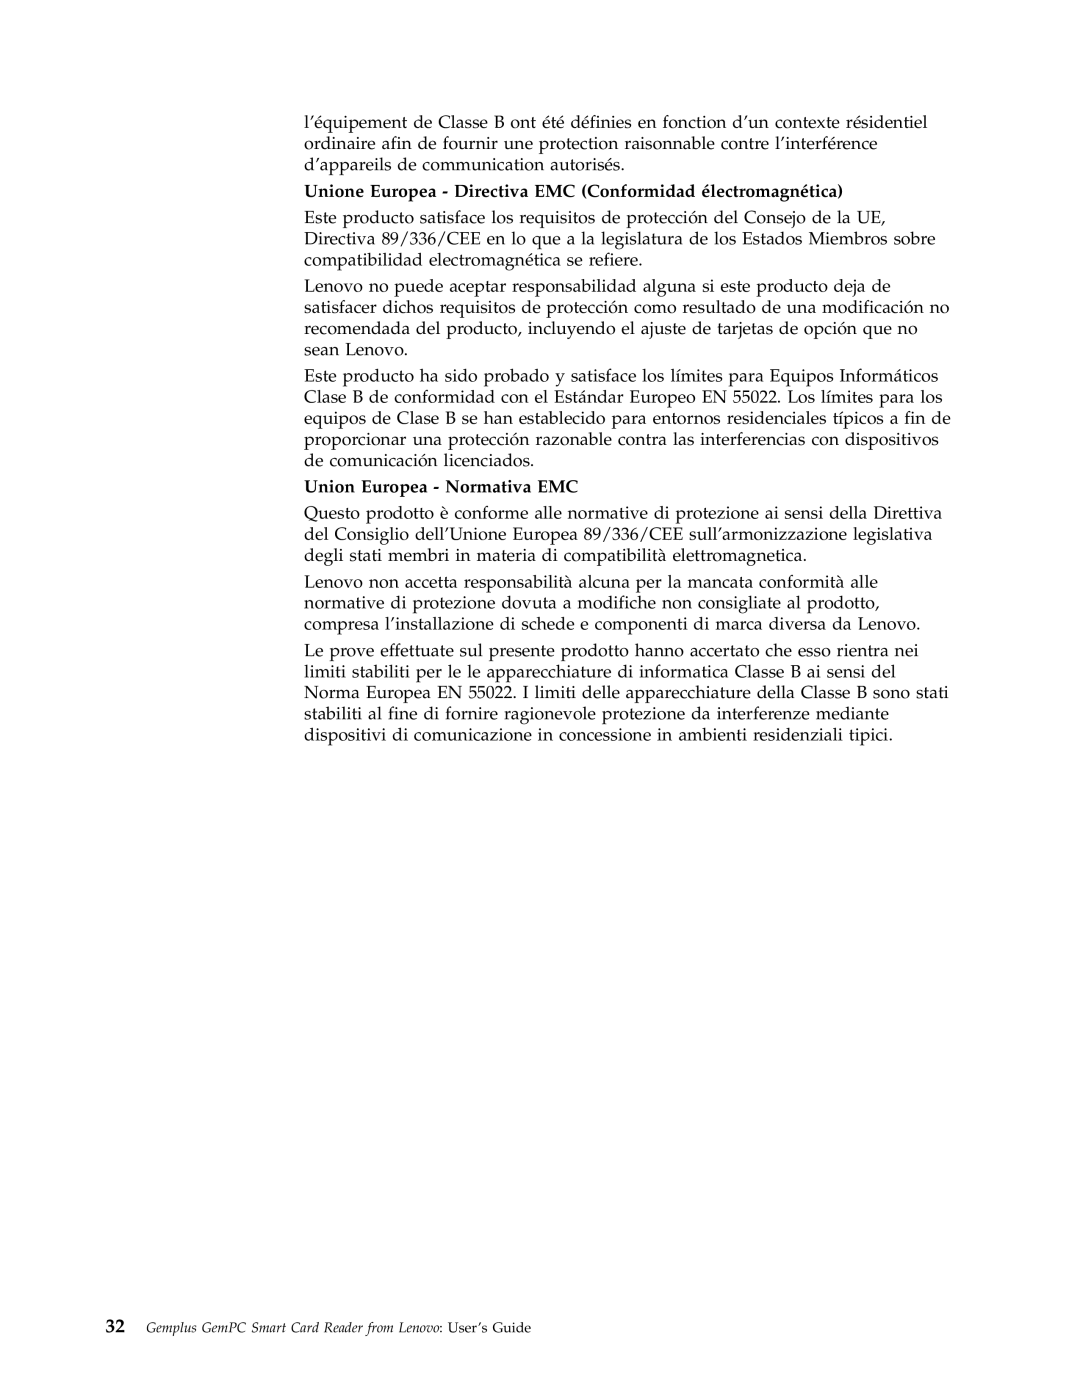 Lenovo 41N3005 manual Union Europea - Normativa EMC 